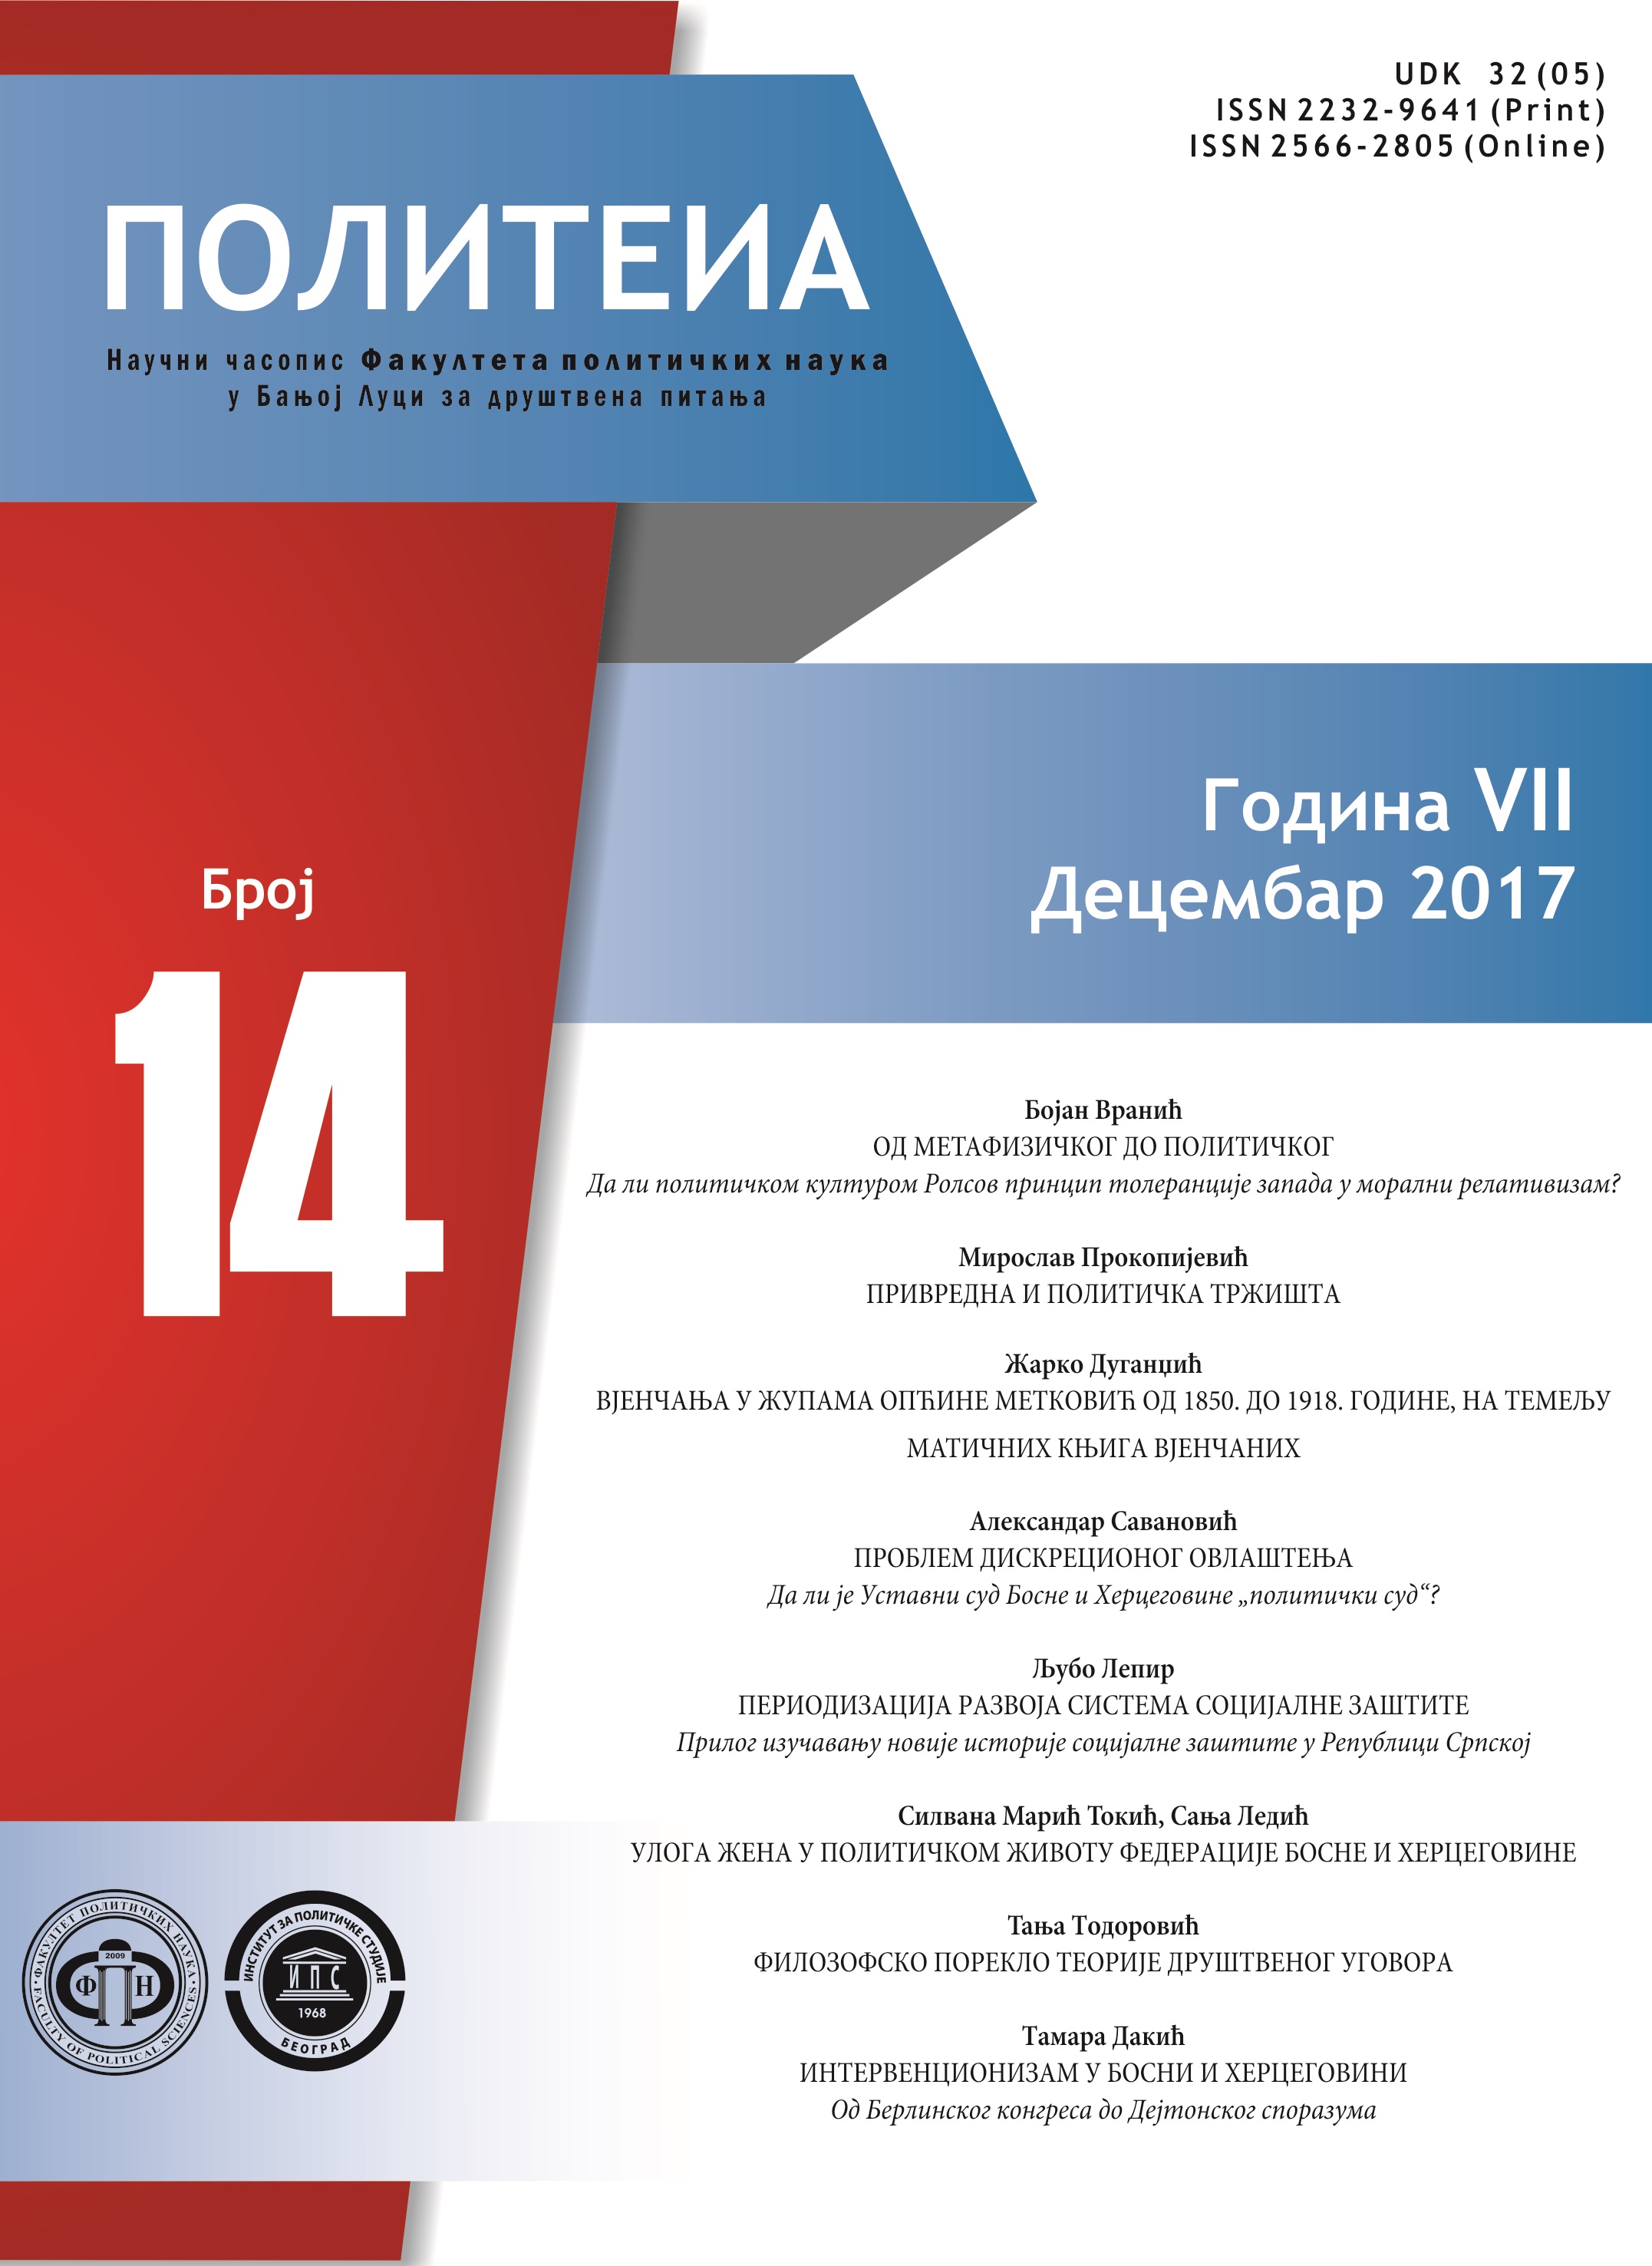 Periodizacija razvoja sistema socijalne zaštite - Prilog izučavanju novije istorije socijalne zaštite u Republici Srpskoj